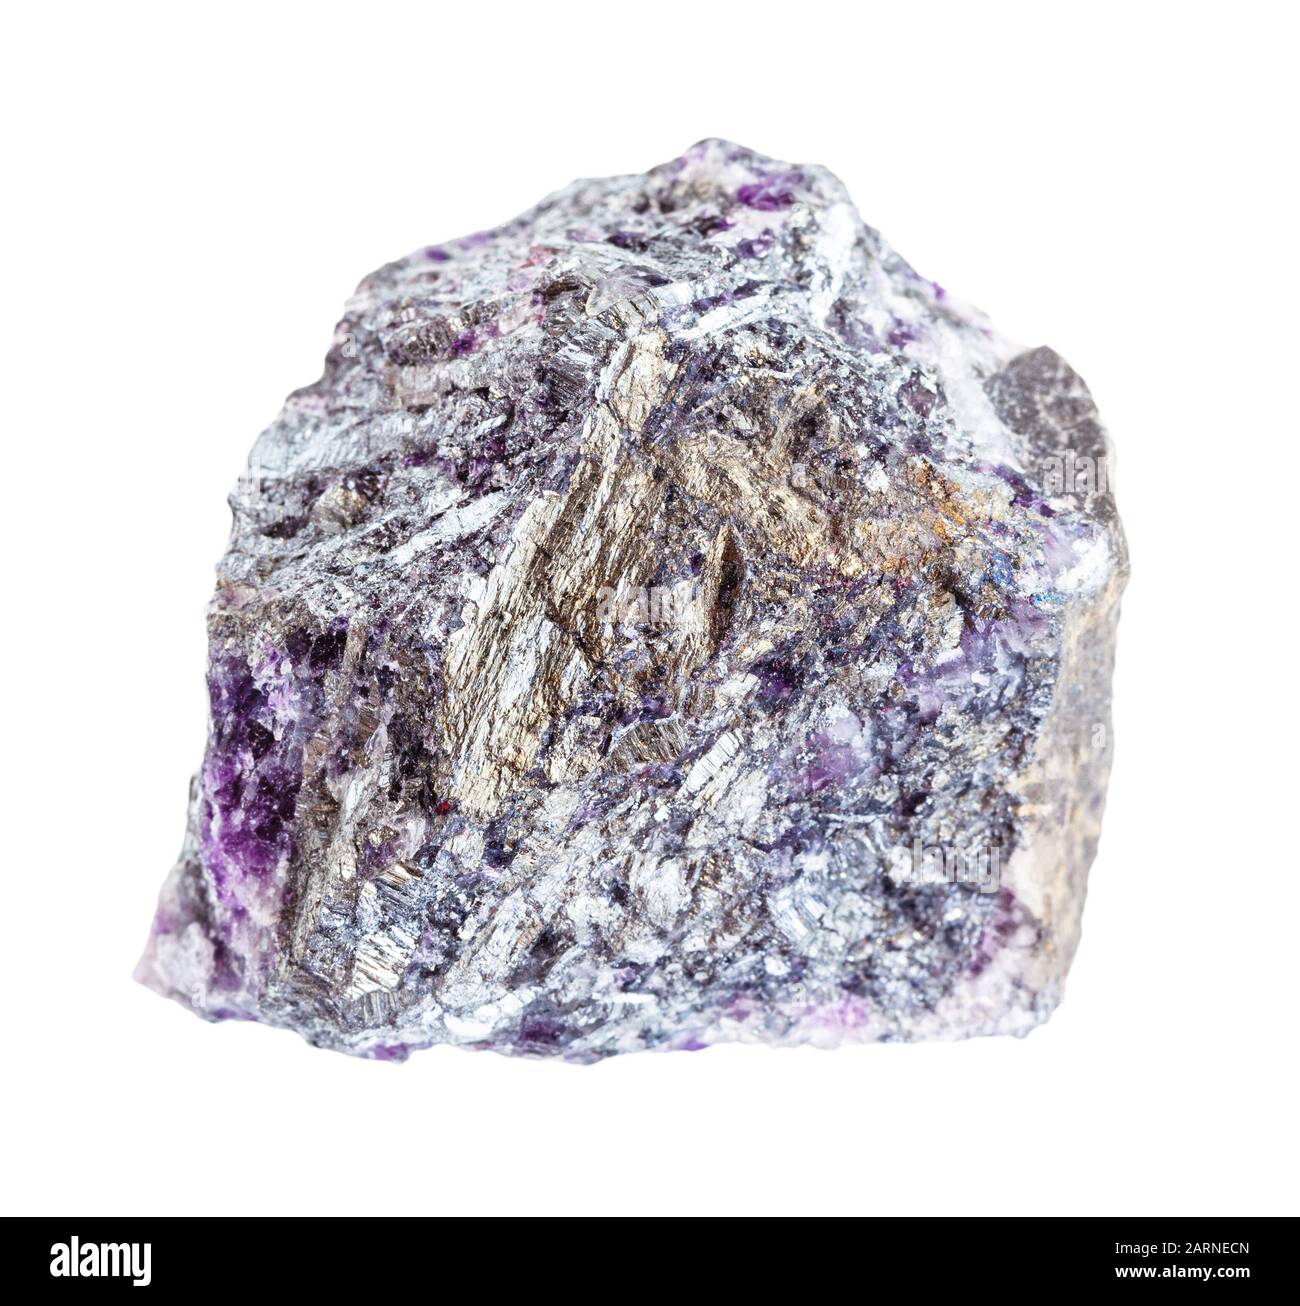 Closeup di campione di minerale naturale dalla raccolta geologica - Stibnite grezza (Antimonite) minerale con quarzo Amethyst isolato su sfondo bianco Foto Stock